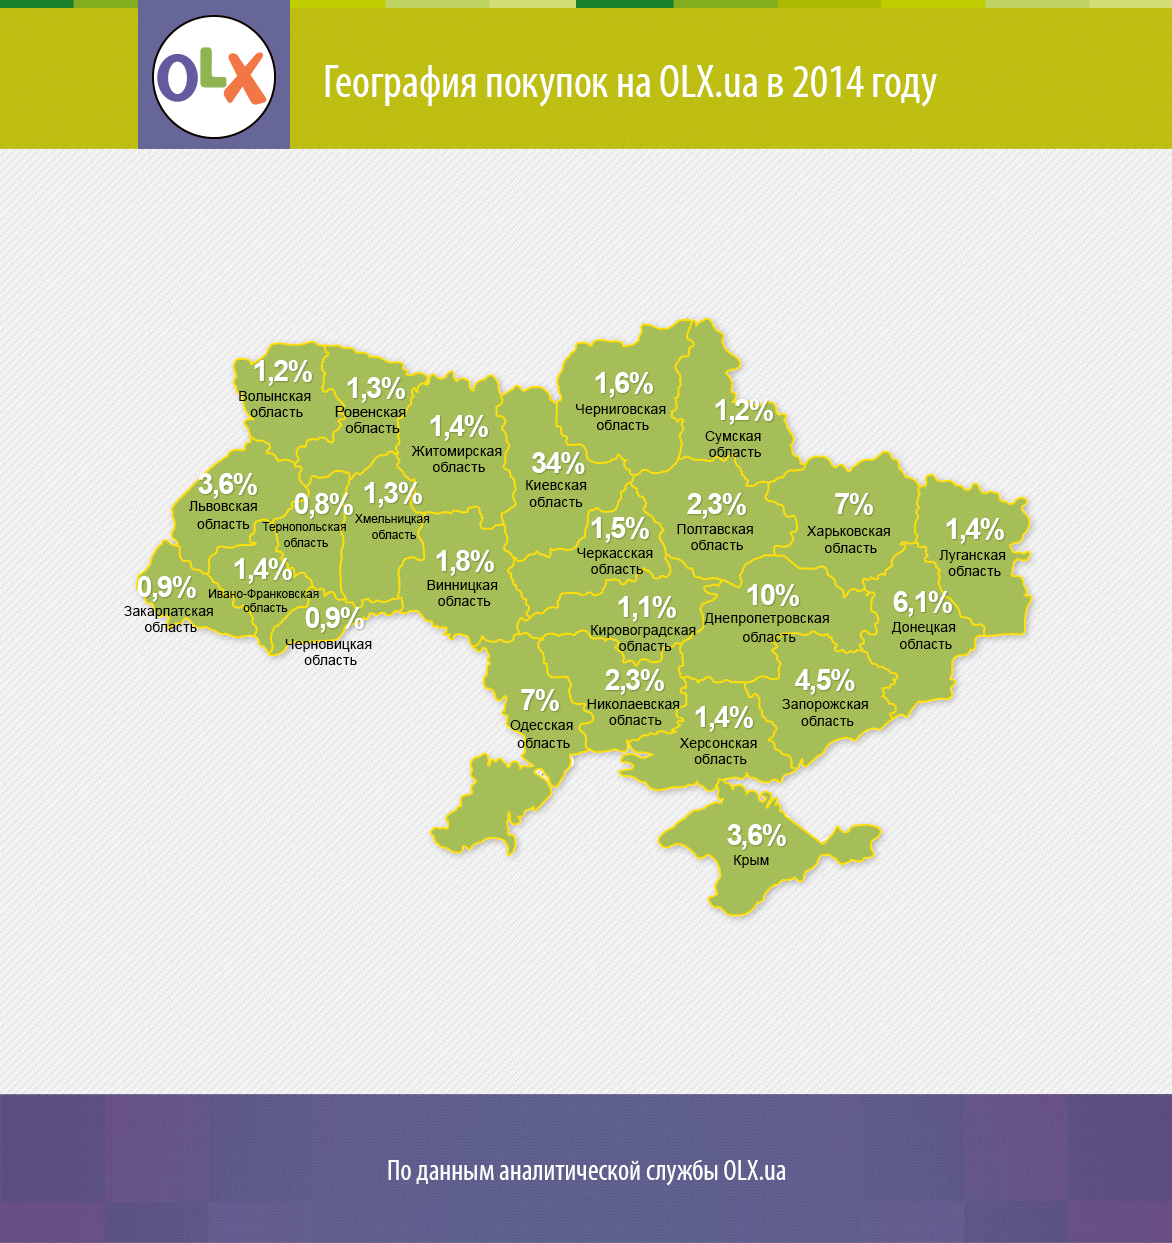 Стрімке зростання продажів продемонстрували користувачі західних і центральних областей України, де кількість закритих угод на OLX збільшилася більш ніж в два рази в порівнянні з 2013 роком